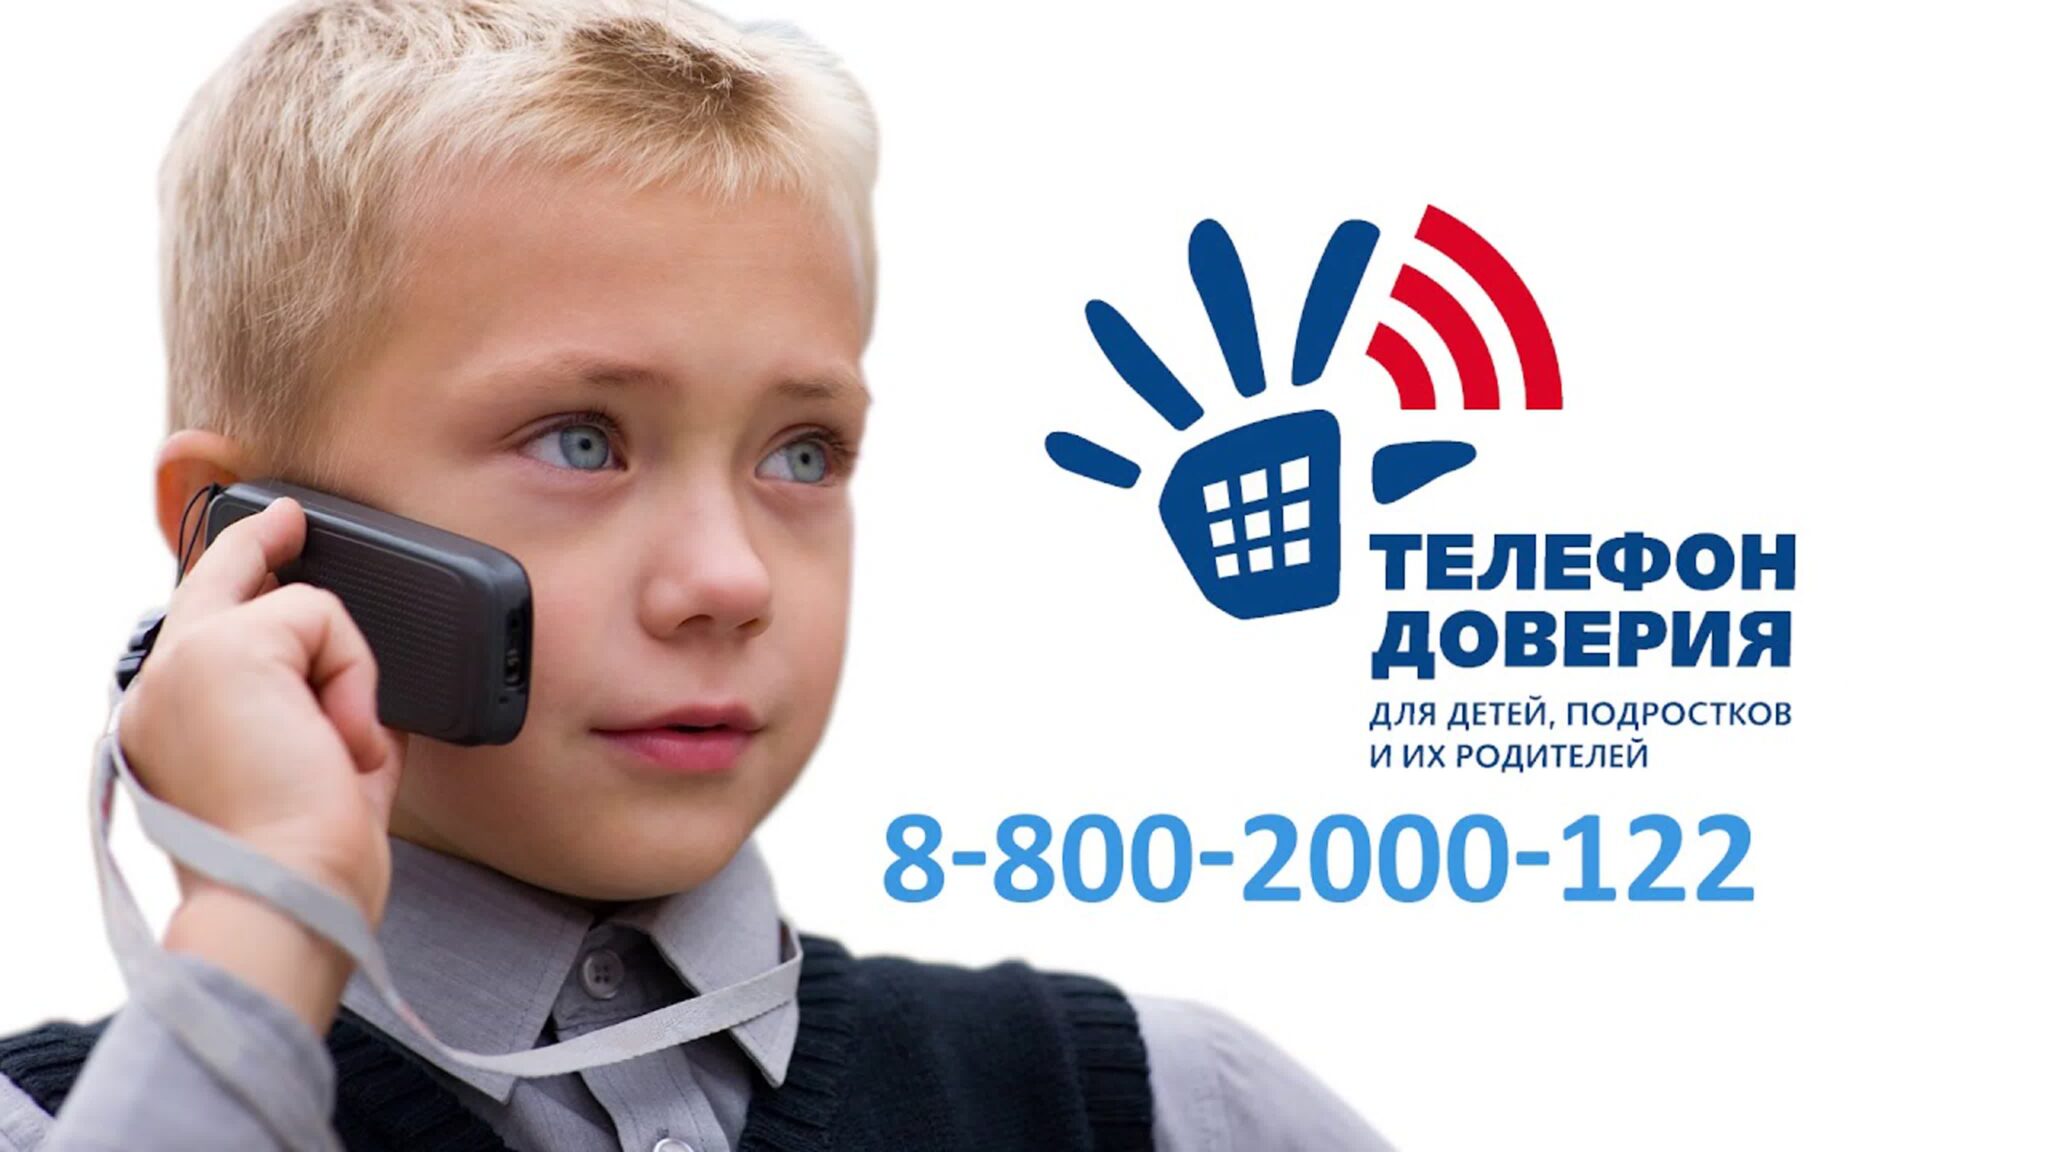 Детский телефон доверия 8-800-2000-122 